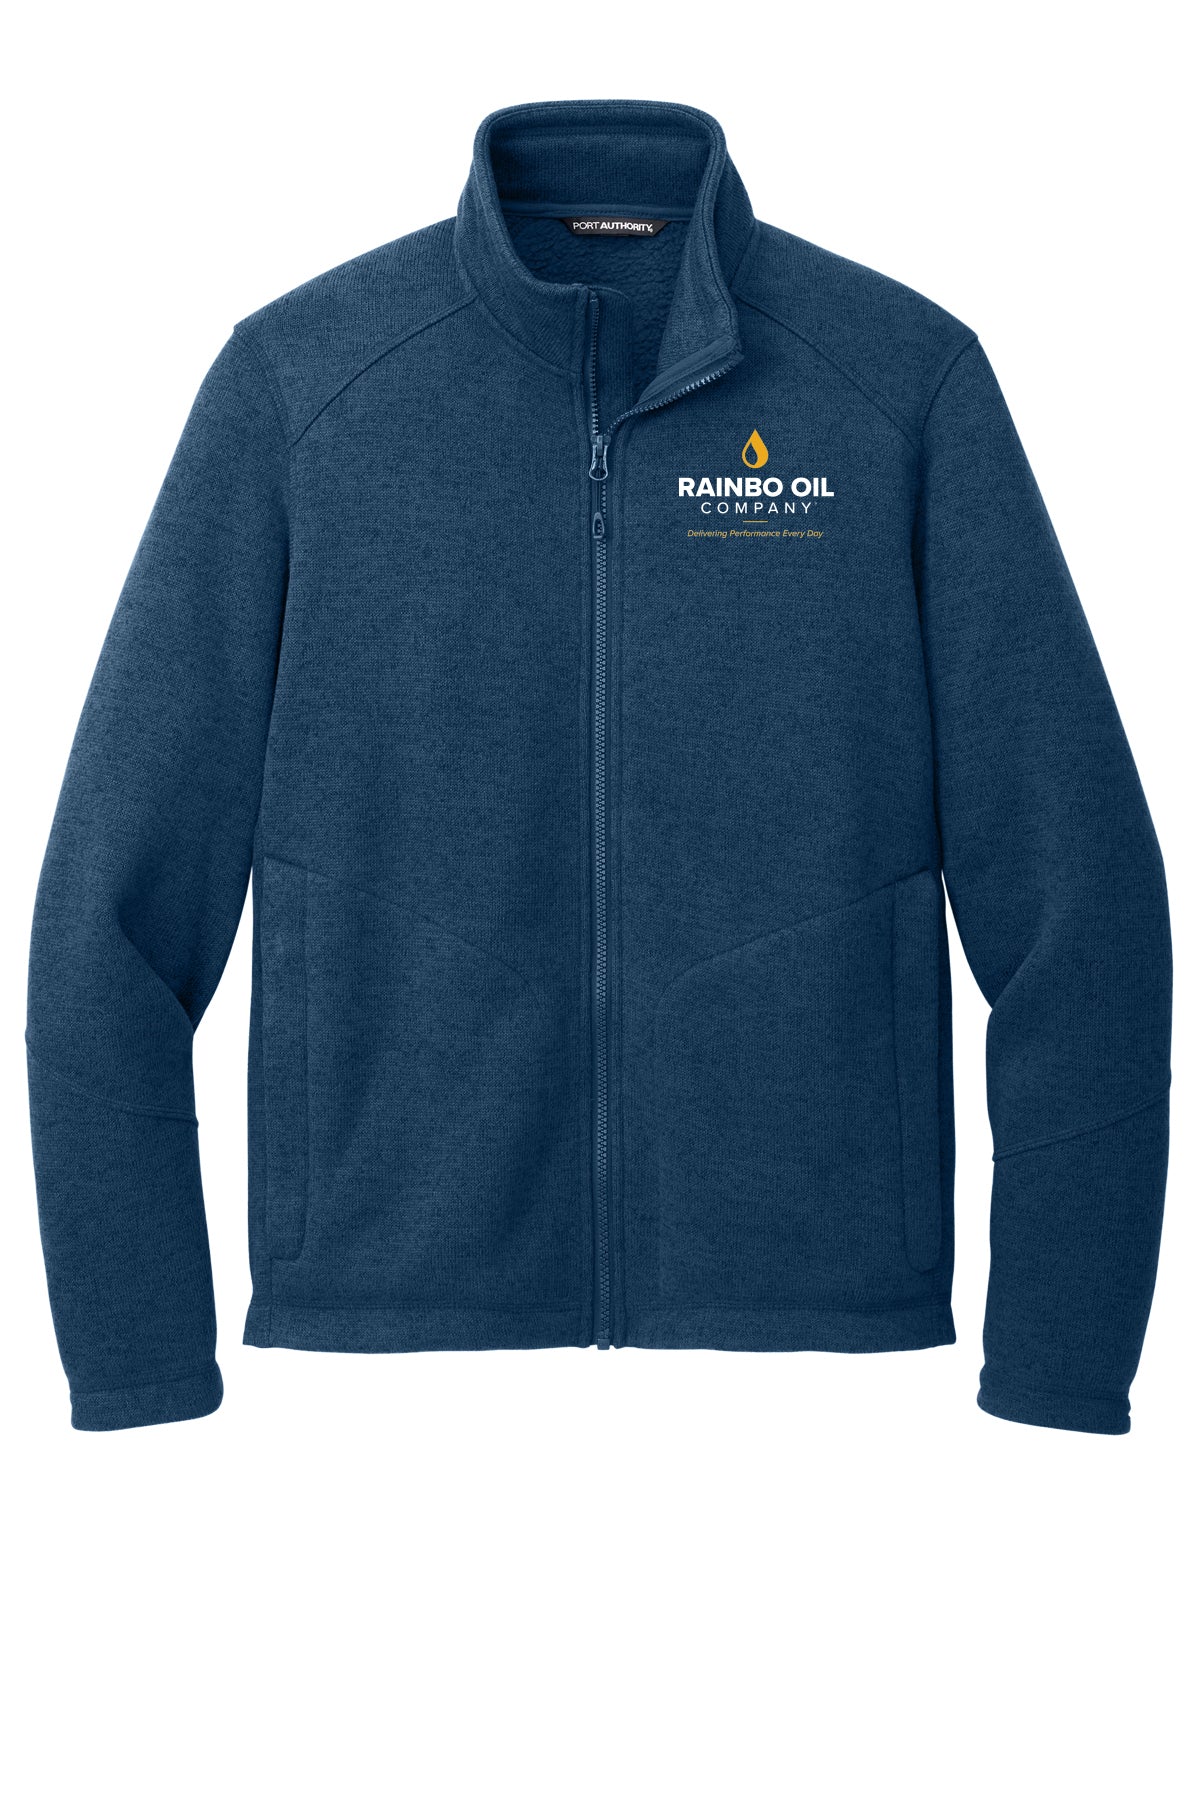 F428- RAINBO OIL Port Authority® Arc Sweater Fleece Jacket